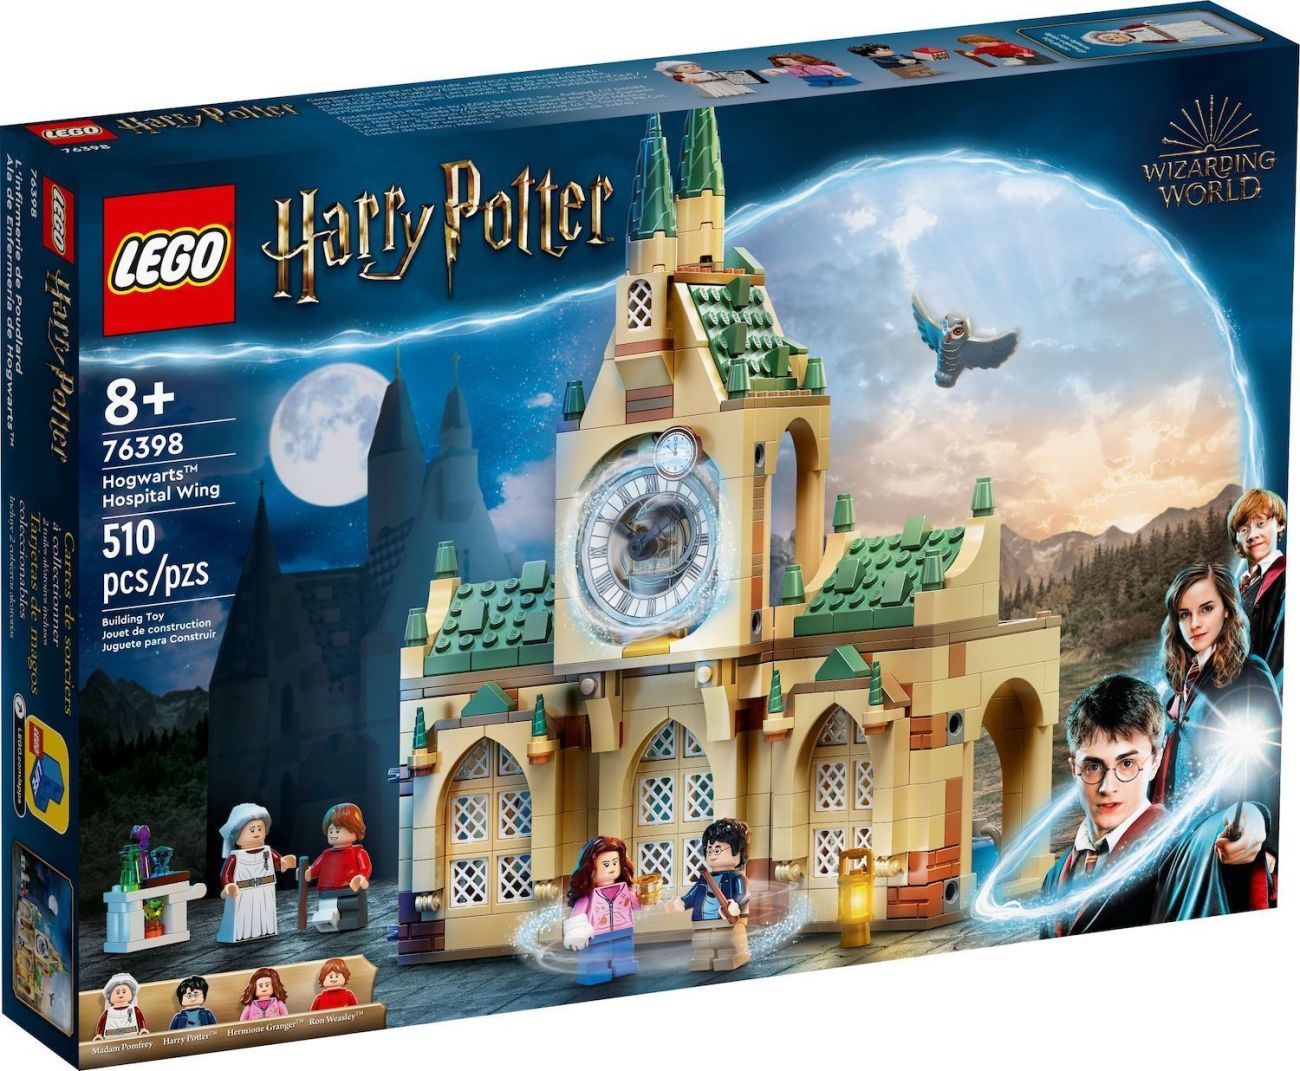 LEGO 76399 Hogwarts Zauberkoffer offiziell vorgestellt